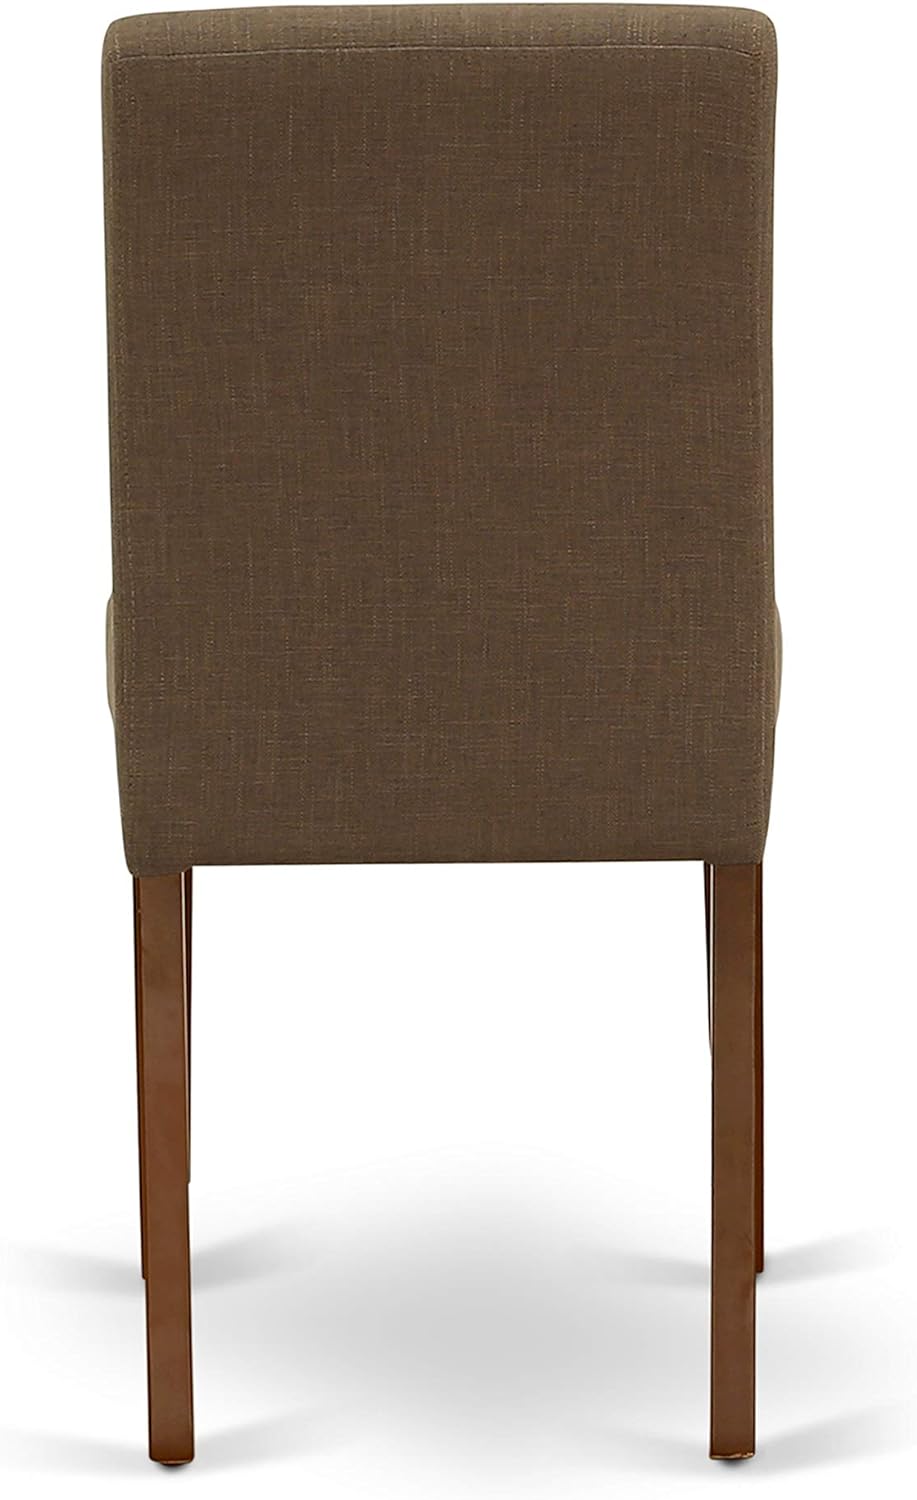 East West Furniture Parson Juego de 2 sillas acolchadas de tela de lino para